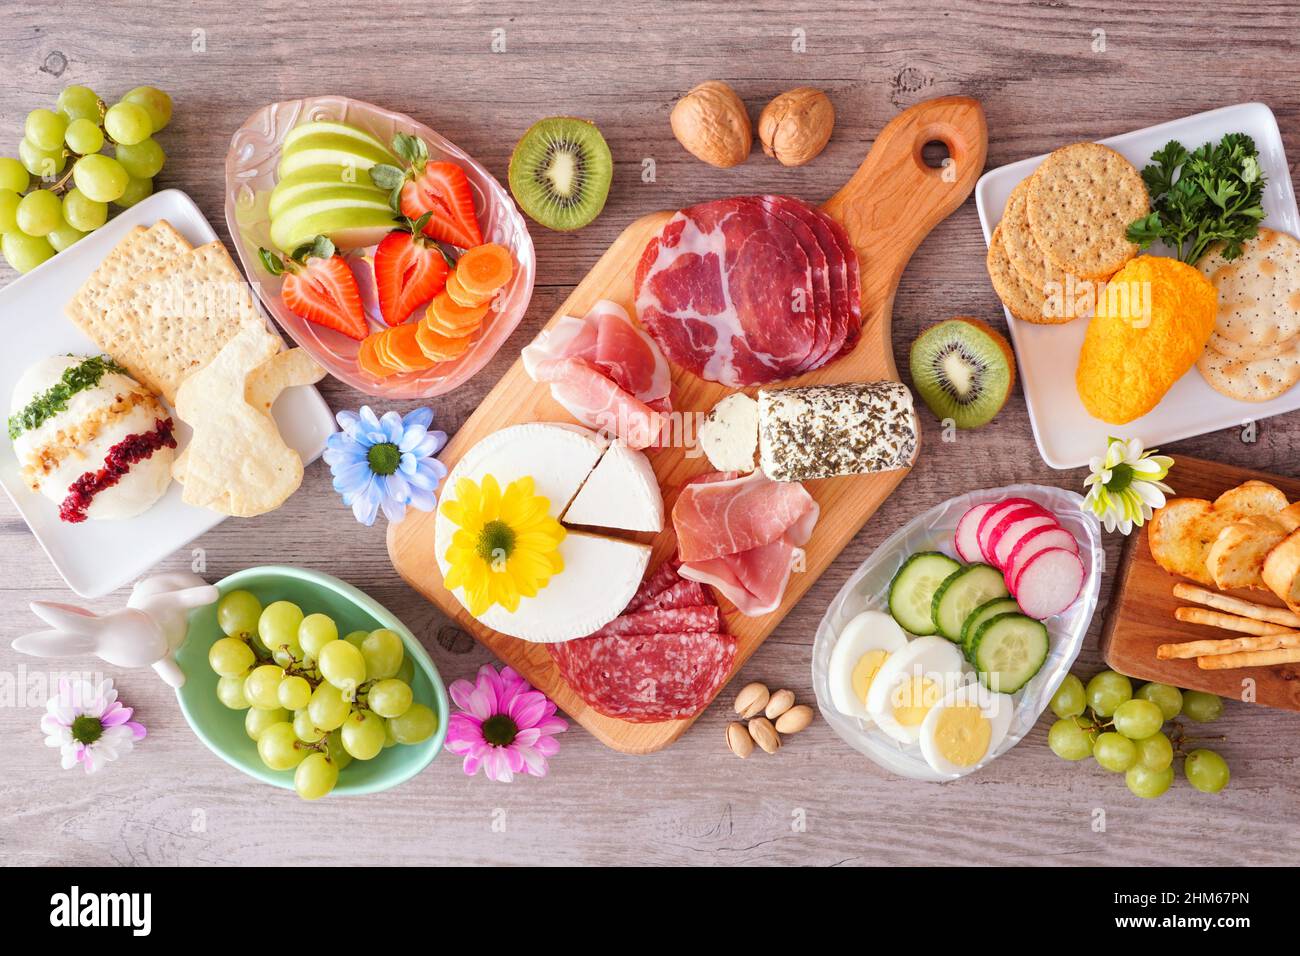 Frühling oder Ostern Thema Charcuterie Tischszene vor einem Holzhintergrund. Verschiedene Vorspeisen mit Käse, Fleisch, Obst und Gemüse. Draufsicht. Stockfoto